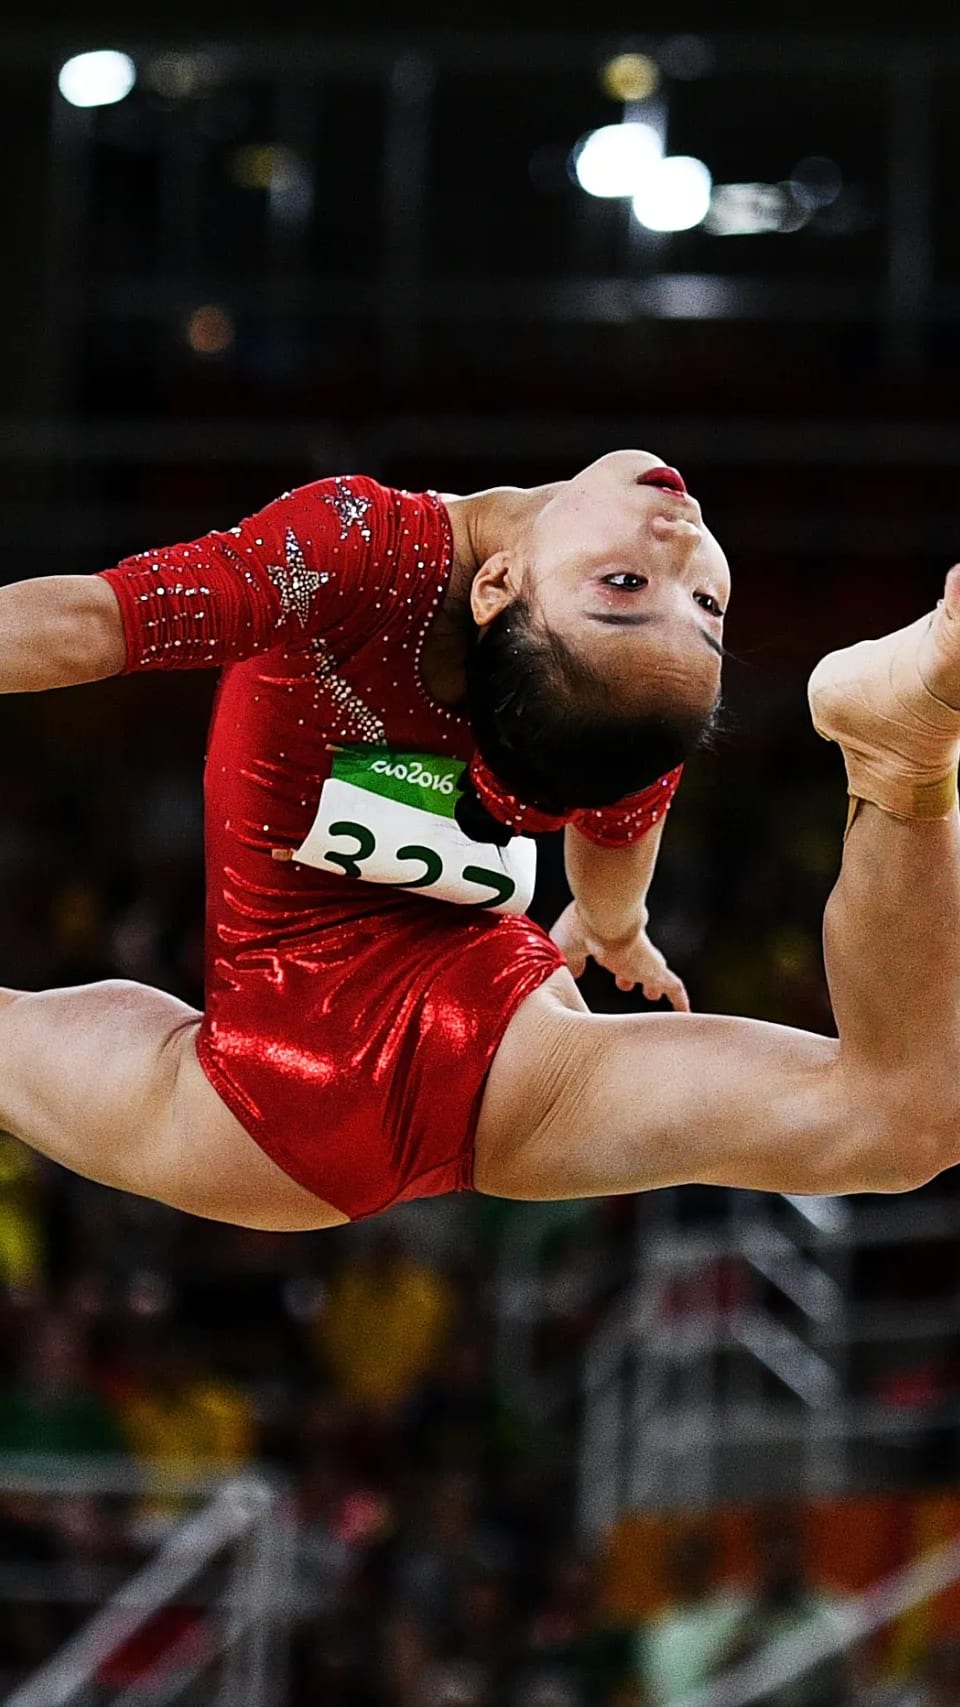 Olympic Artistic Gymnastics